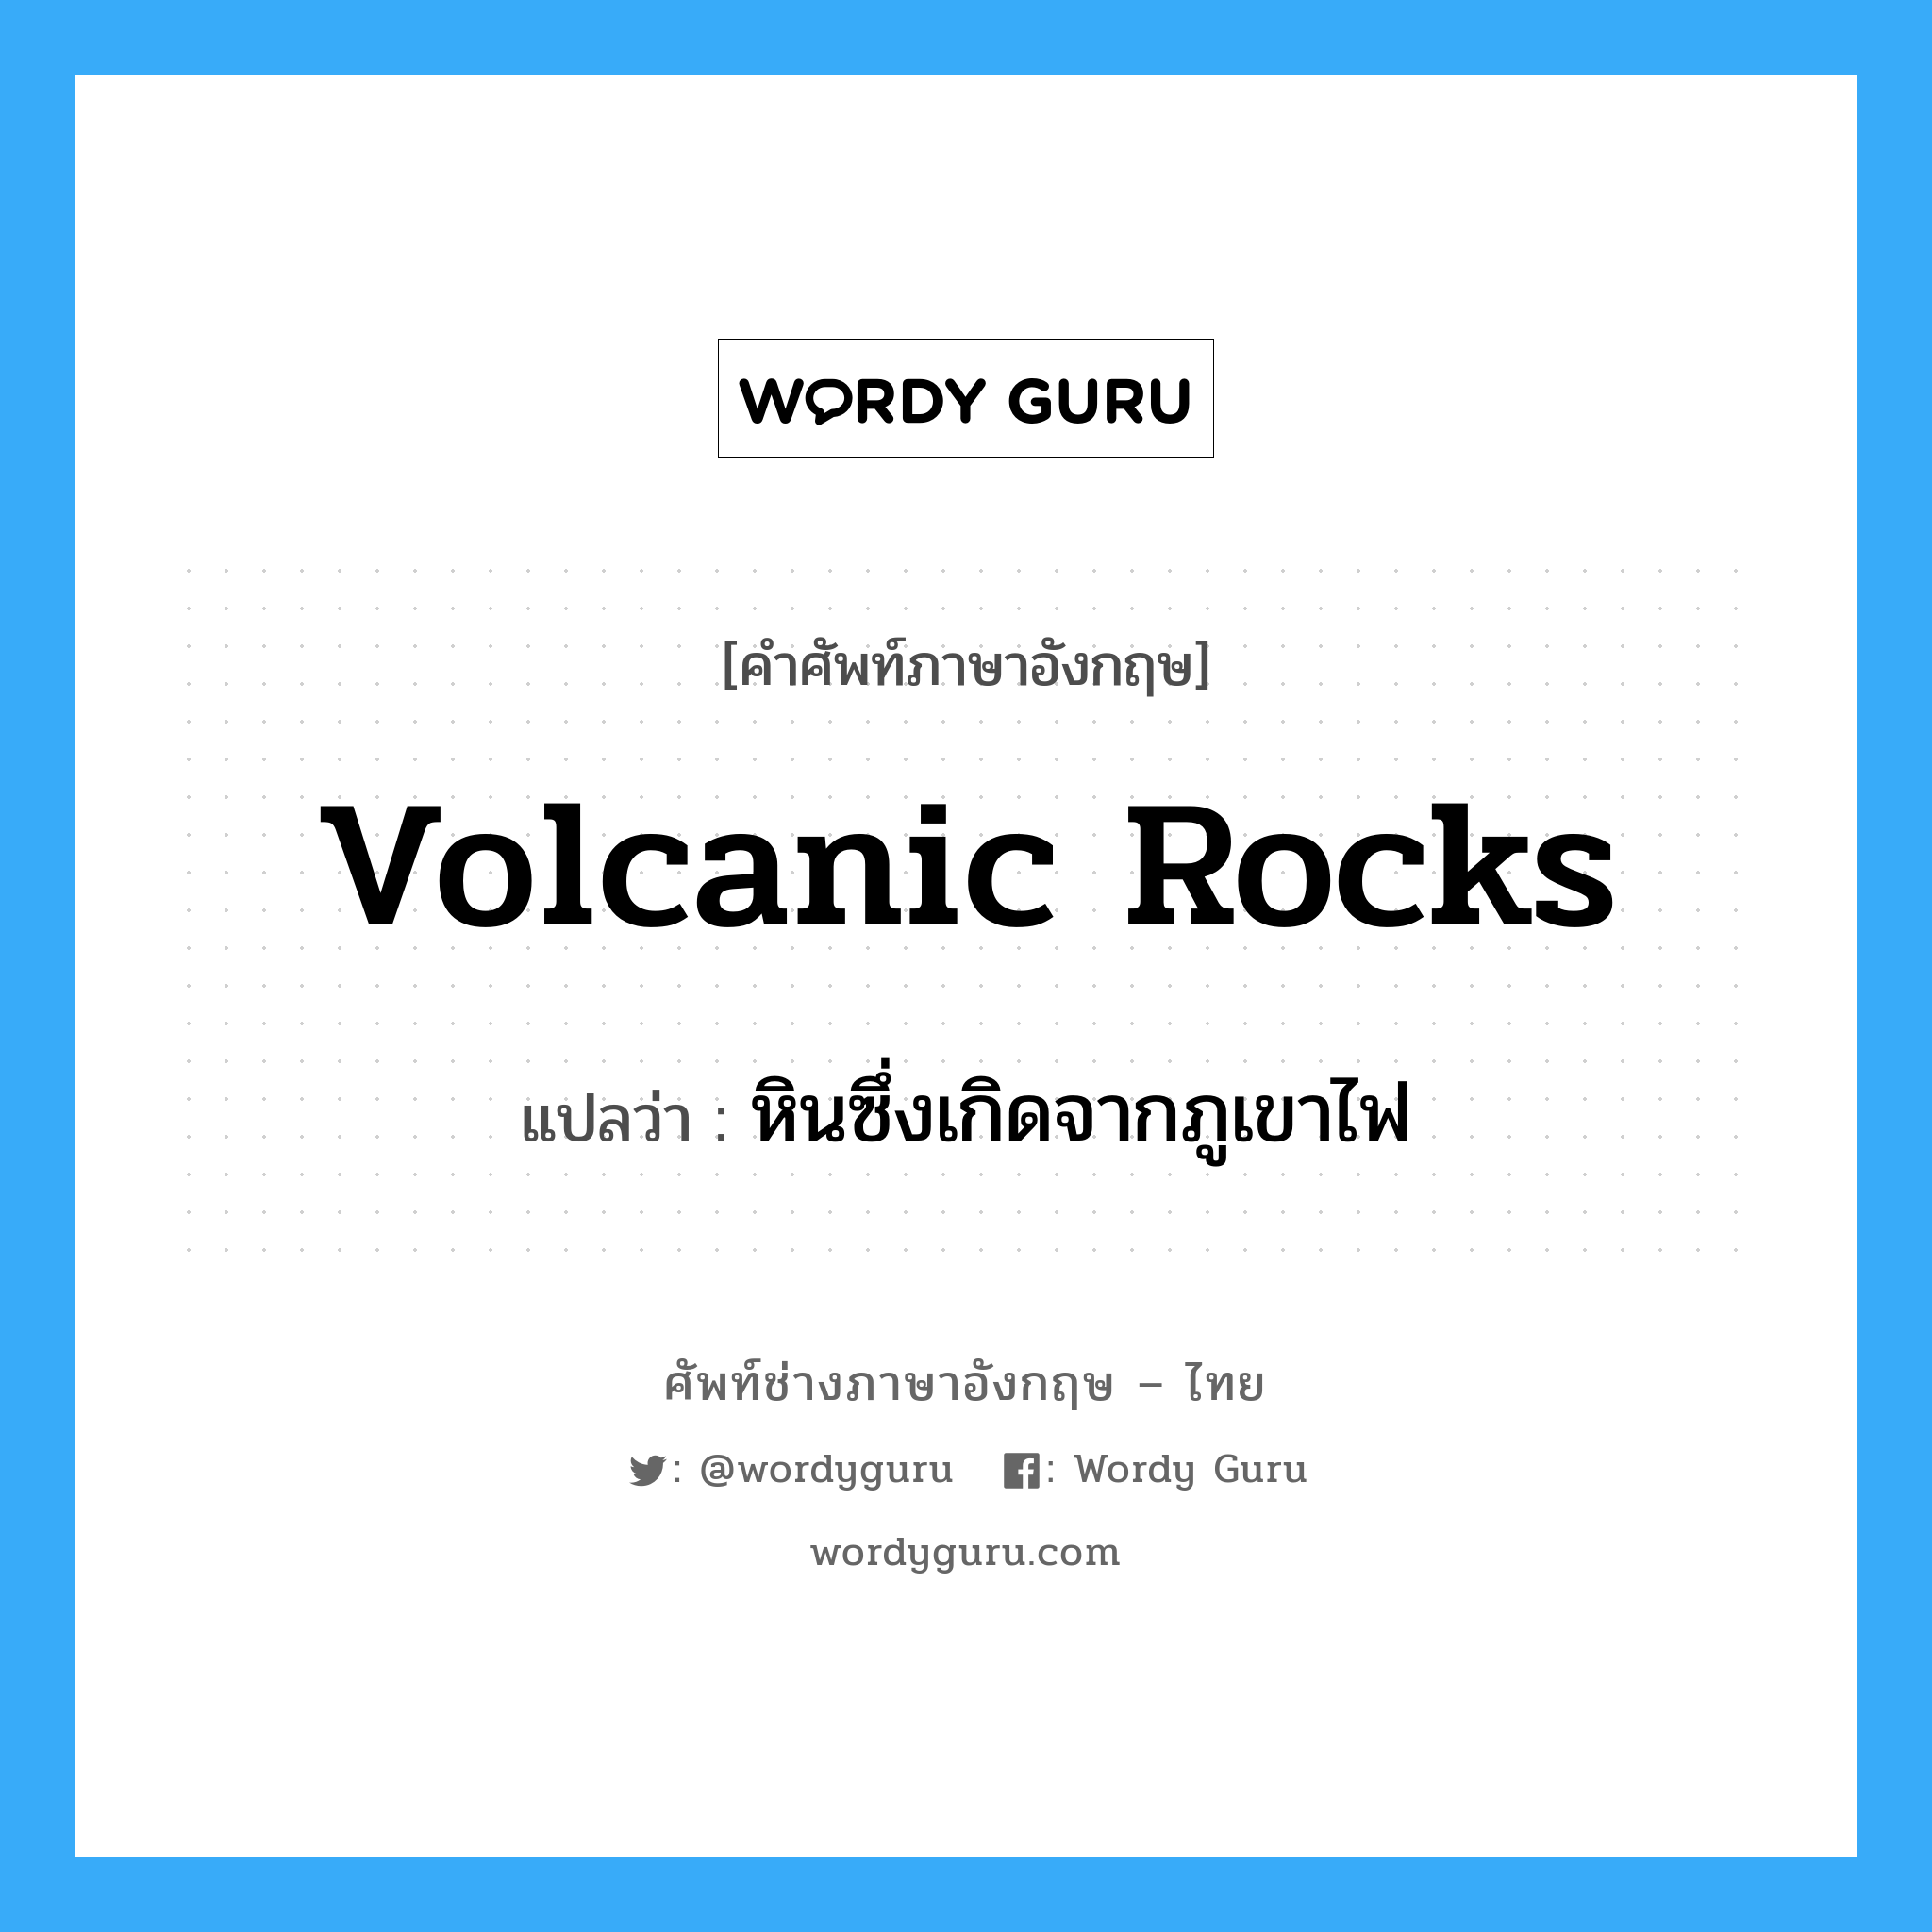 volcanic rocks แปลว่า?, คำศัพท์ช่างภาษาอังกฤษ - ไทย volcanic rocks คำศัพท์ภาษาอังกฤษ volcanic rocks แปลว่า หินซึ่งเกิดจากภูเขาไฟ